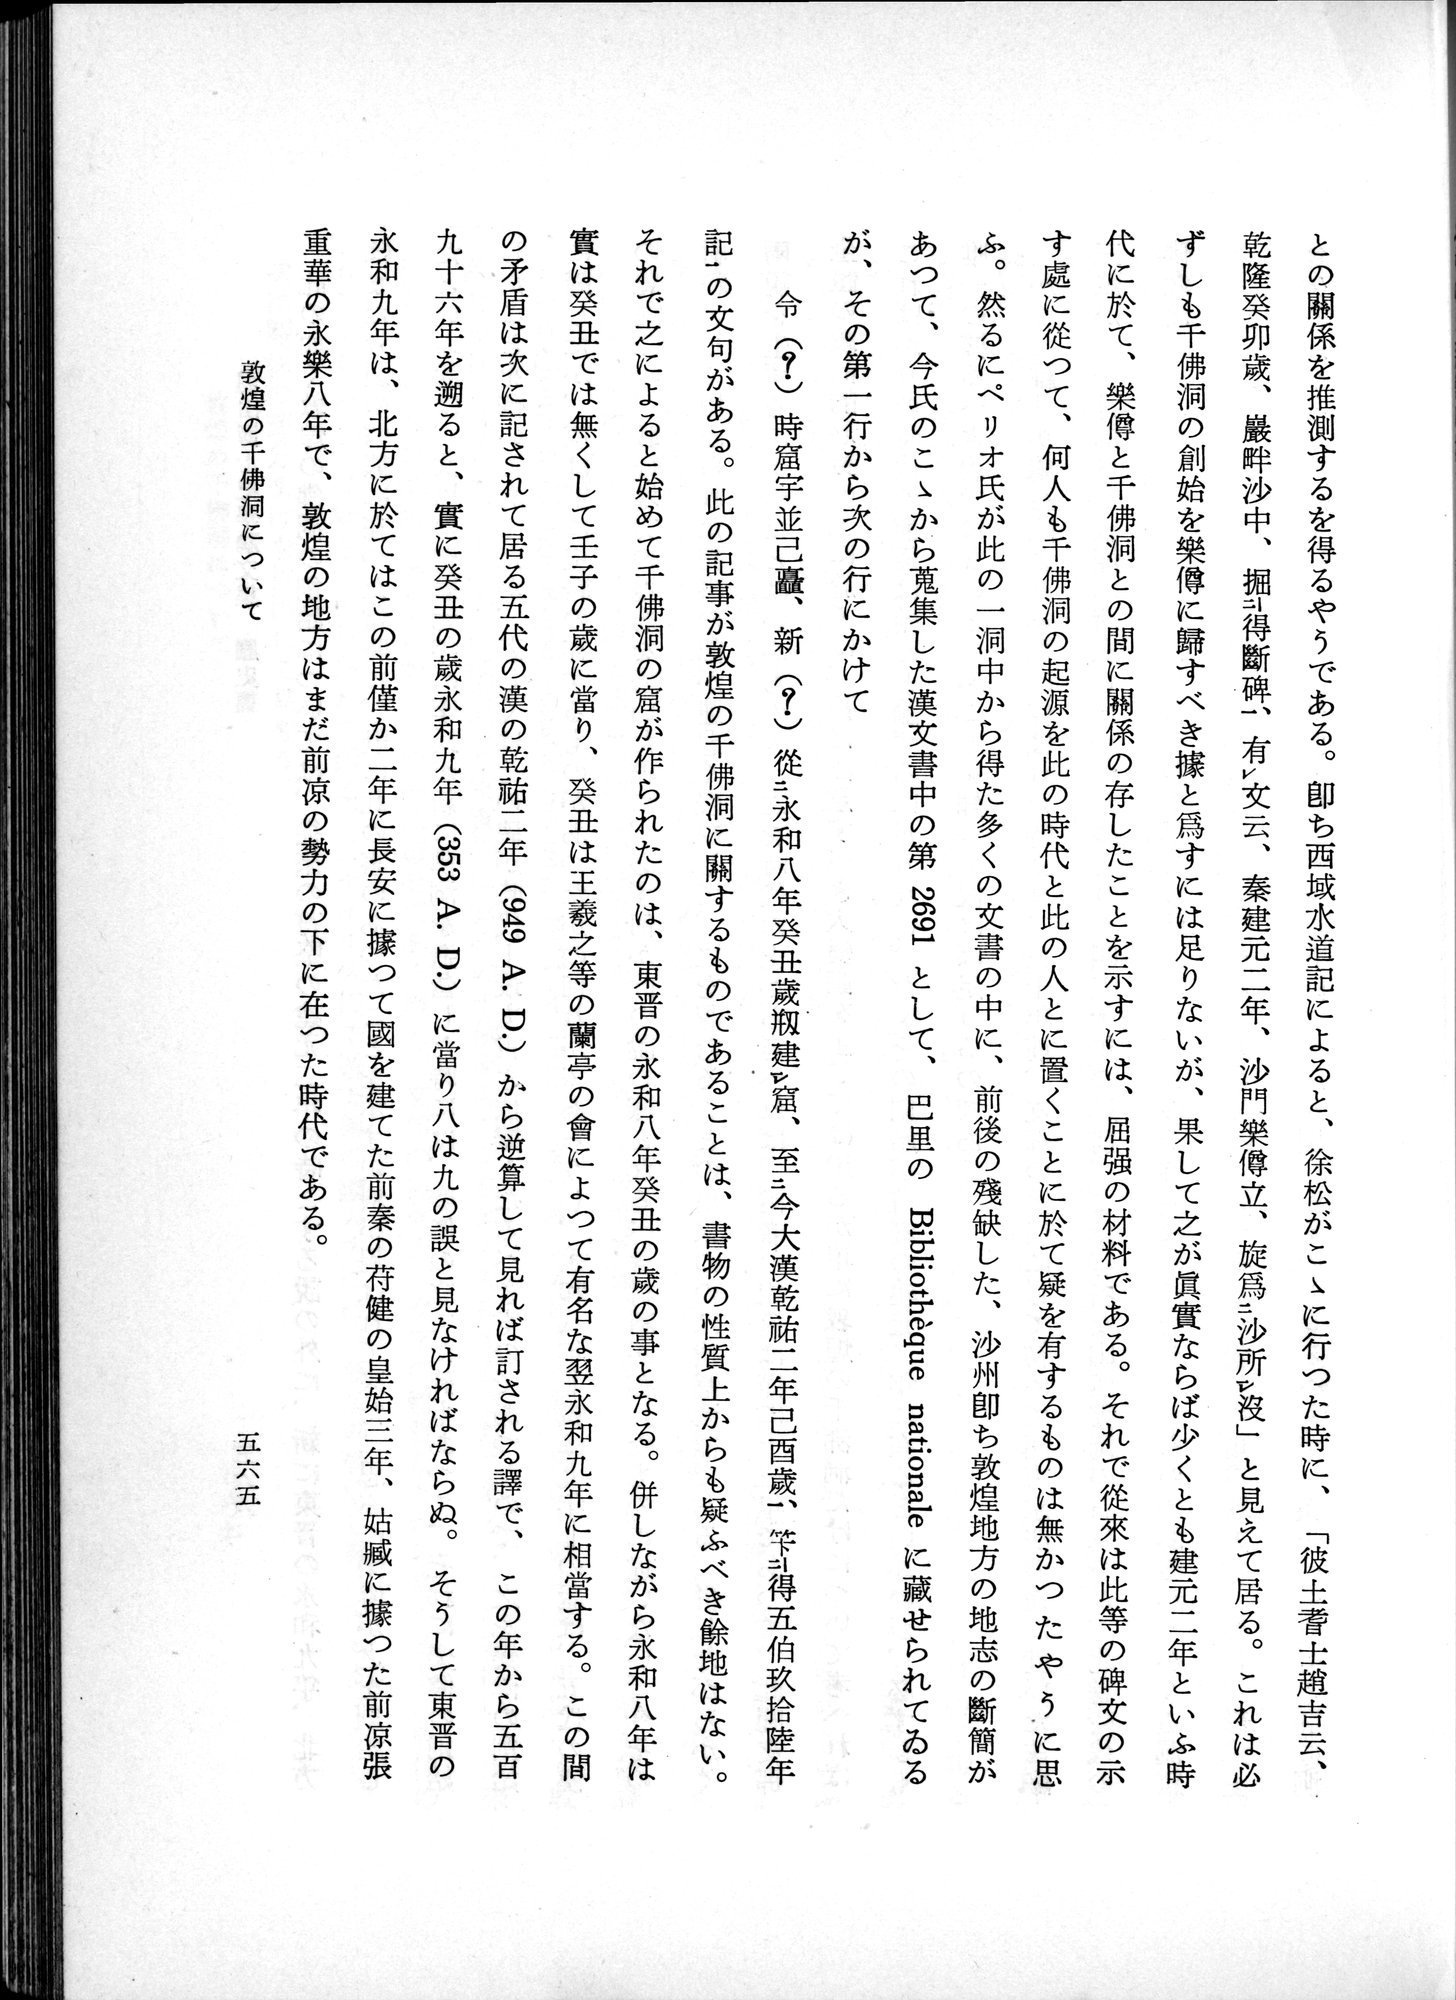 羽田博士史学論文集 : vol.1 / Page 603 (Grayscale High Resolution Image)